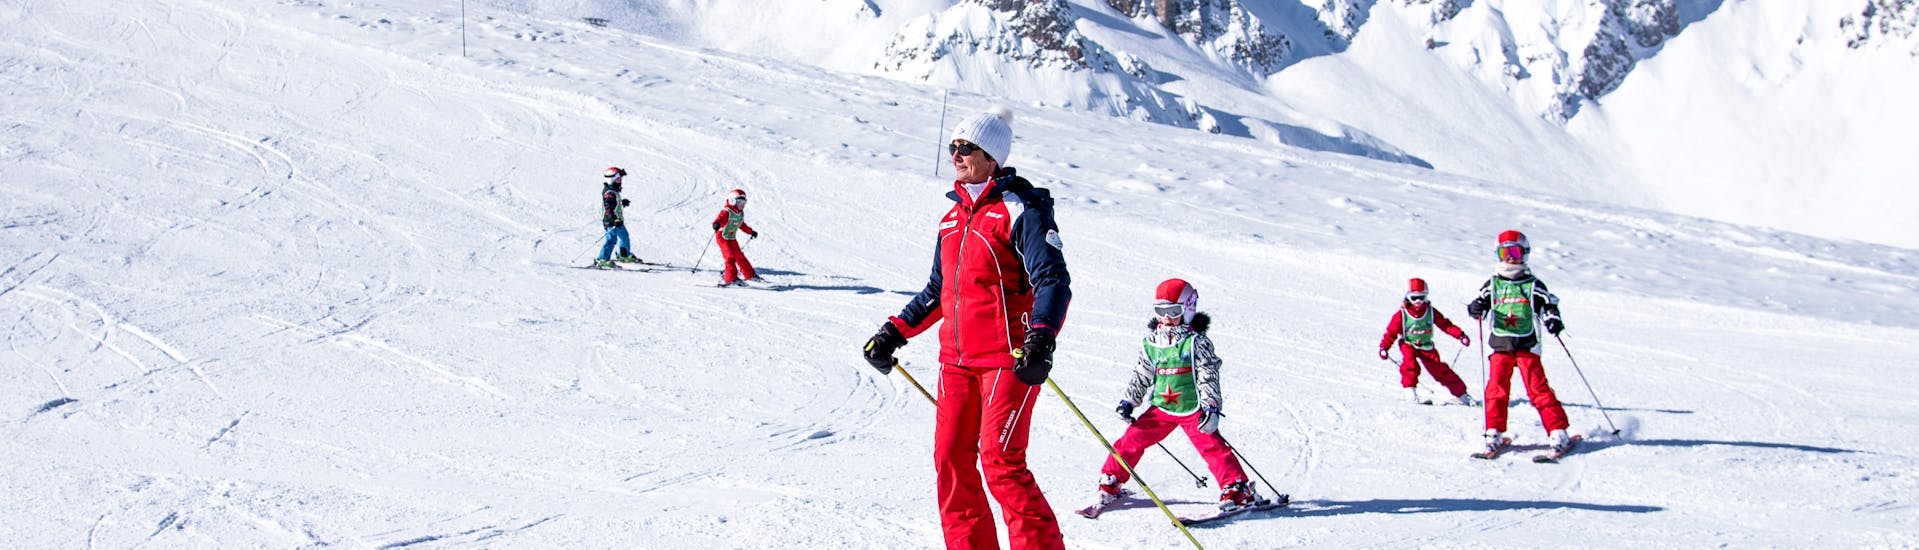 Kinder-Skikurs ab 4 Jahren mit Erfahrung.